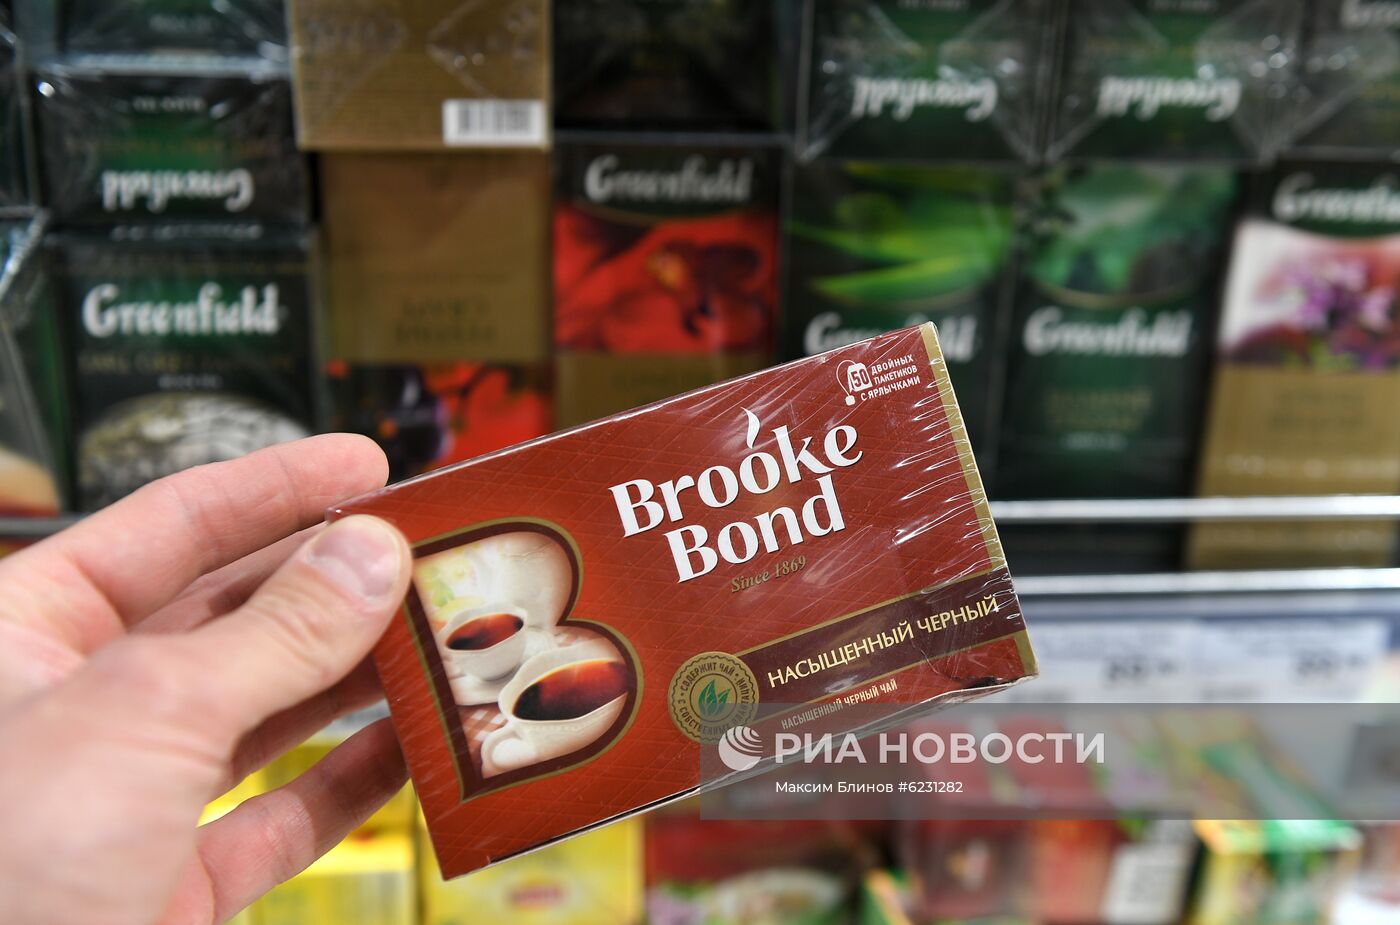 В России перестанут продавать листовой чай Lipton и Brooke Bond